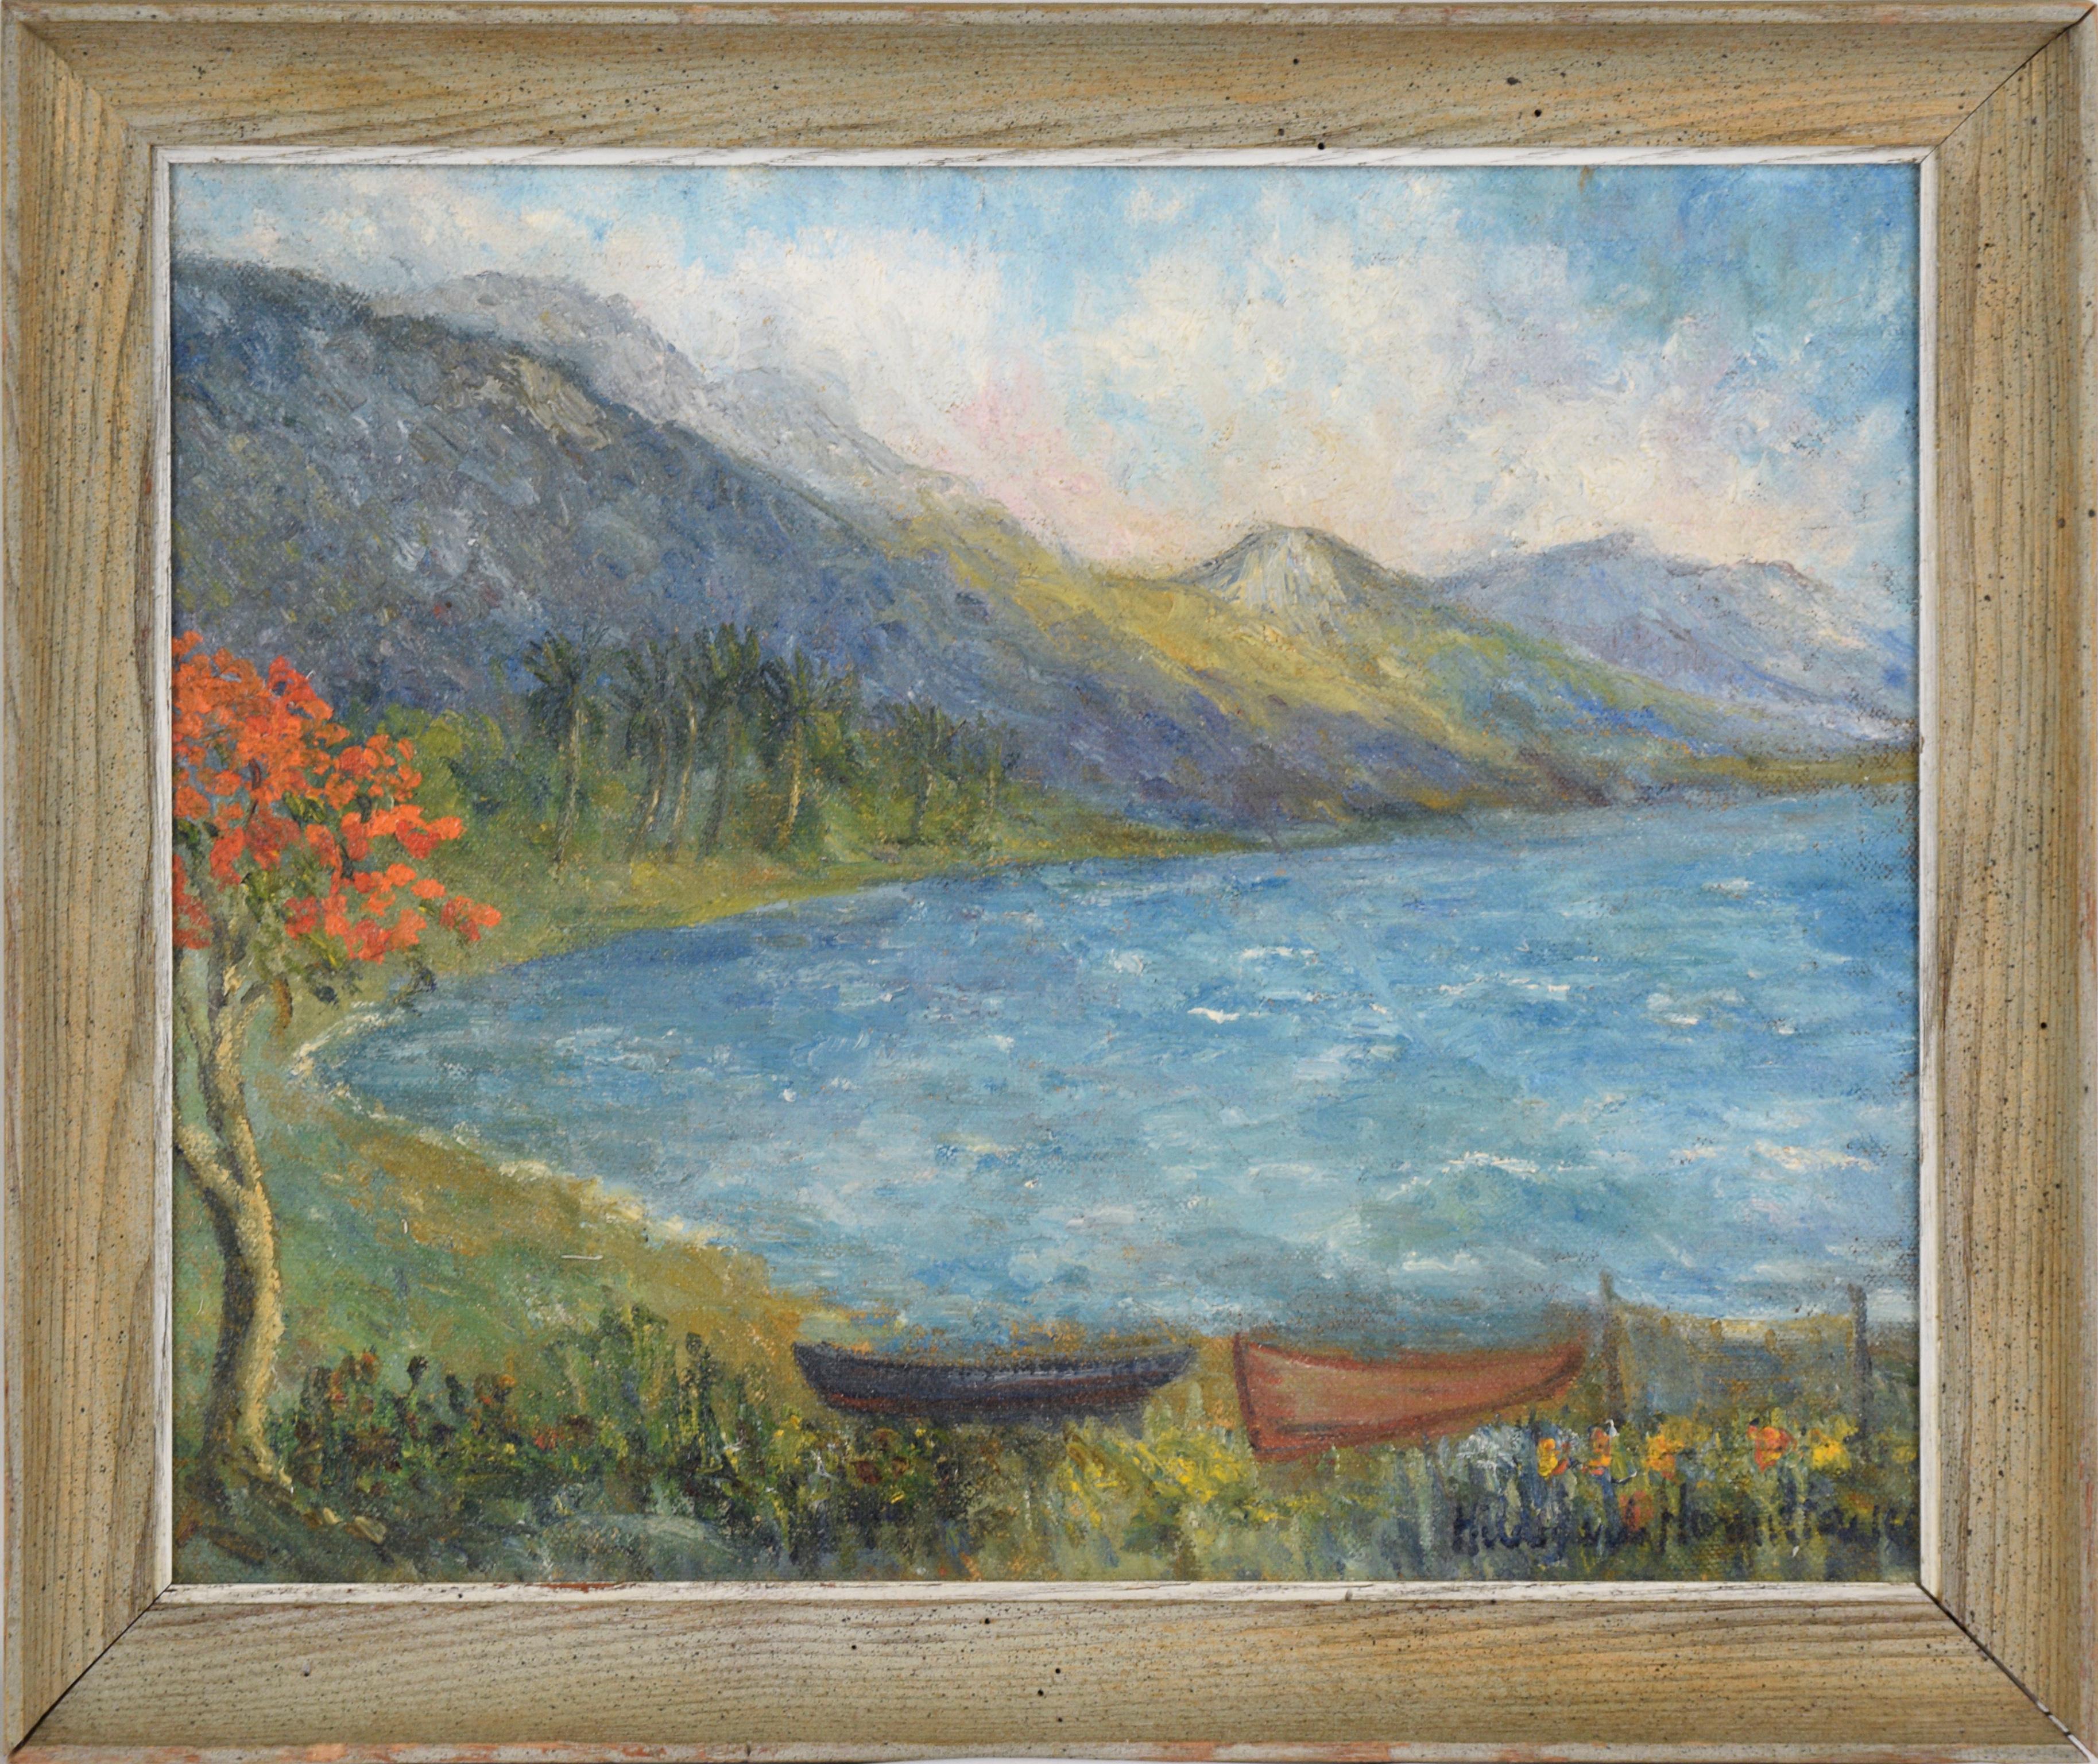 Landscape Painting Hildegarde Hamilton - Mountains et bateaux de l'île des mers et de la côte, paysage du milieu du XXe siècle